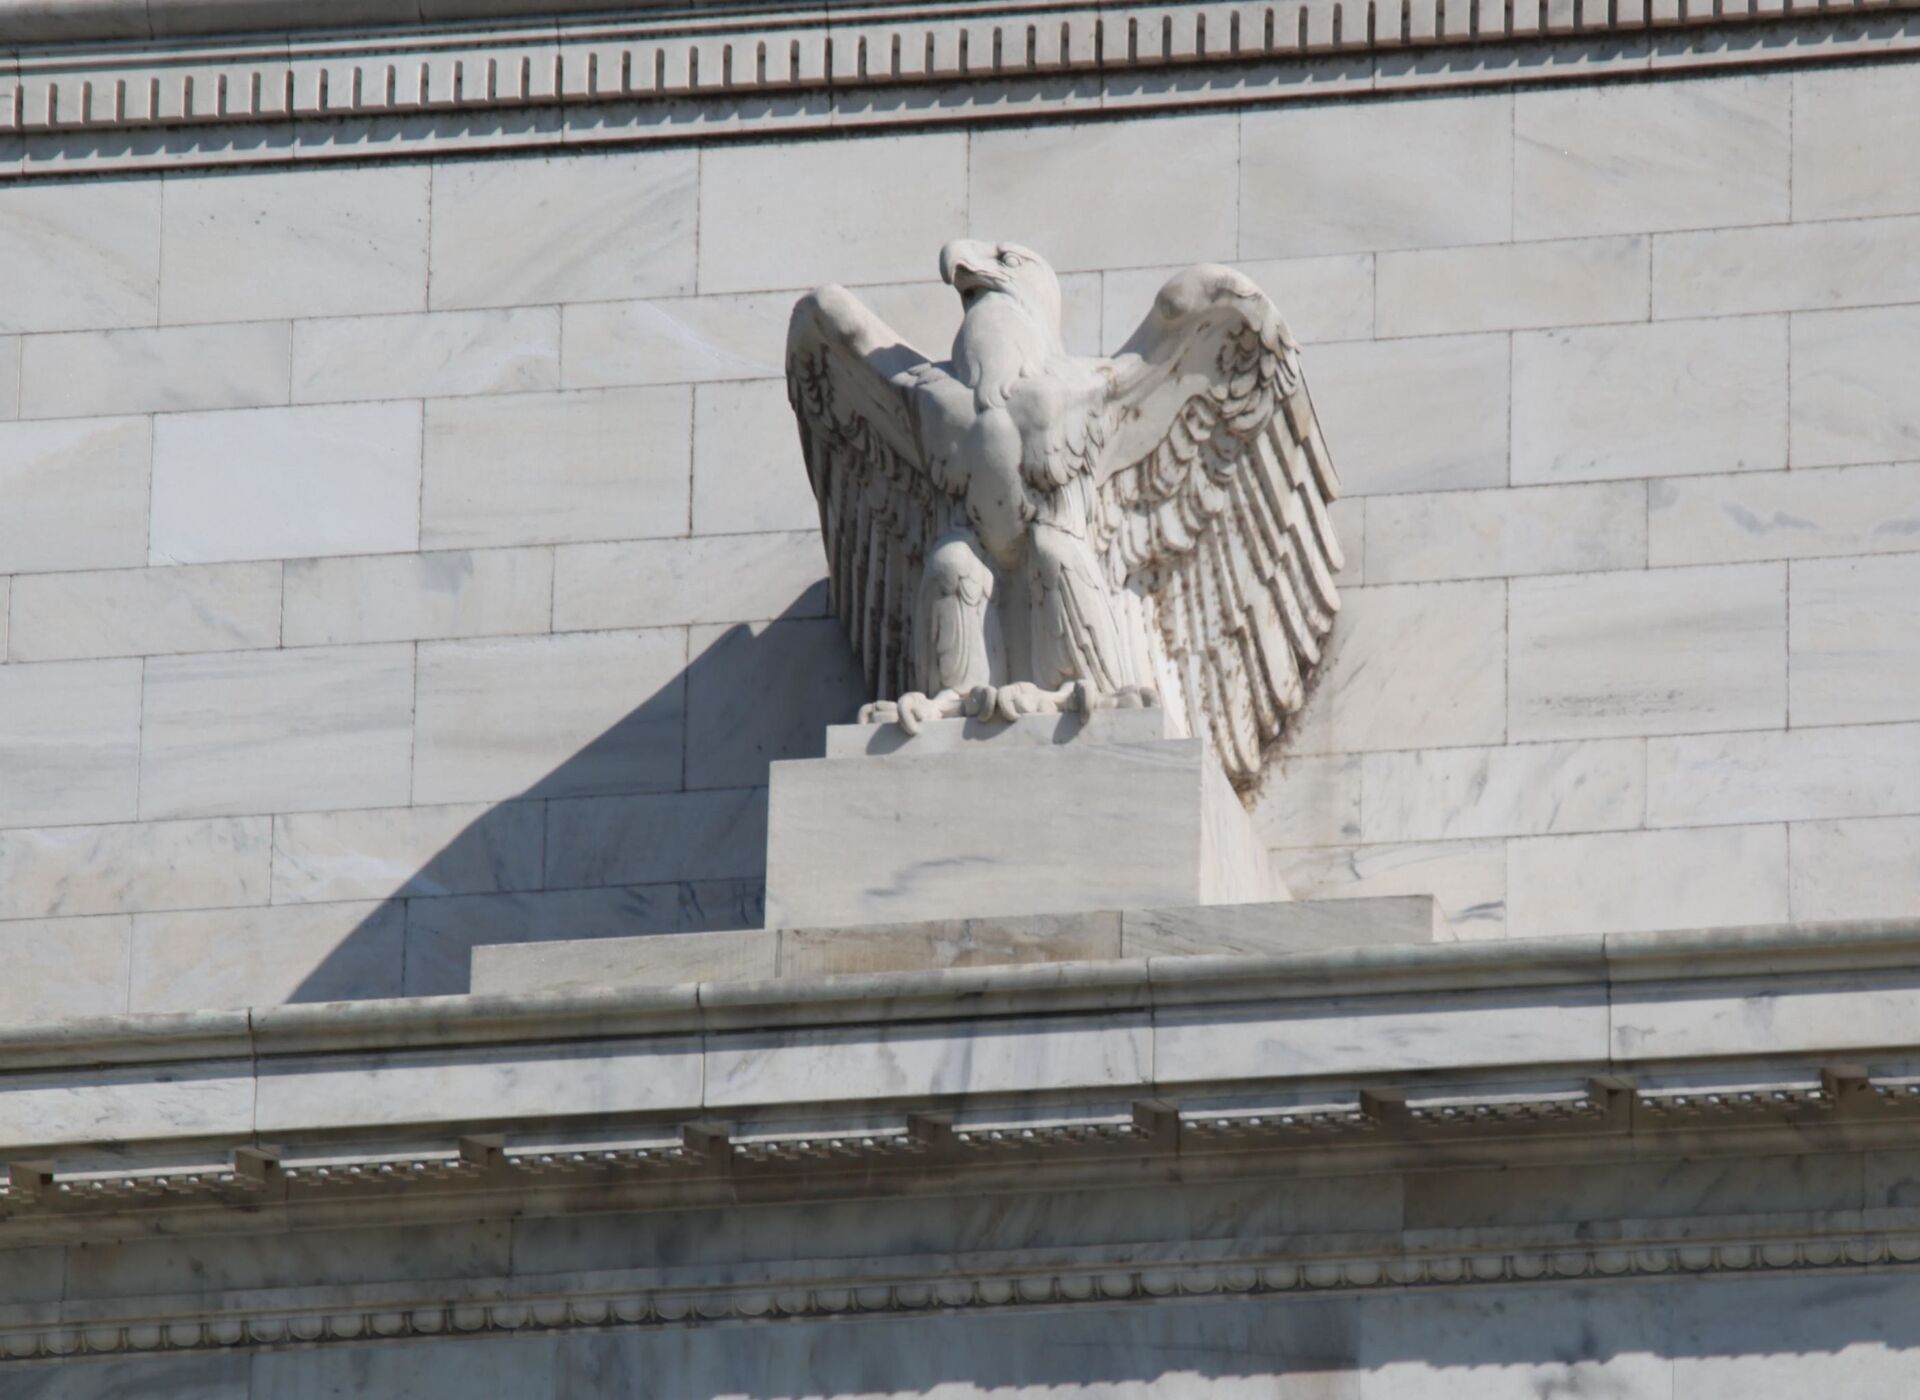  Federal Reserve Building - eagle  - Sputnik International, 1920, 02.10.2021